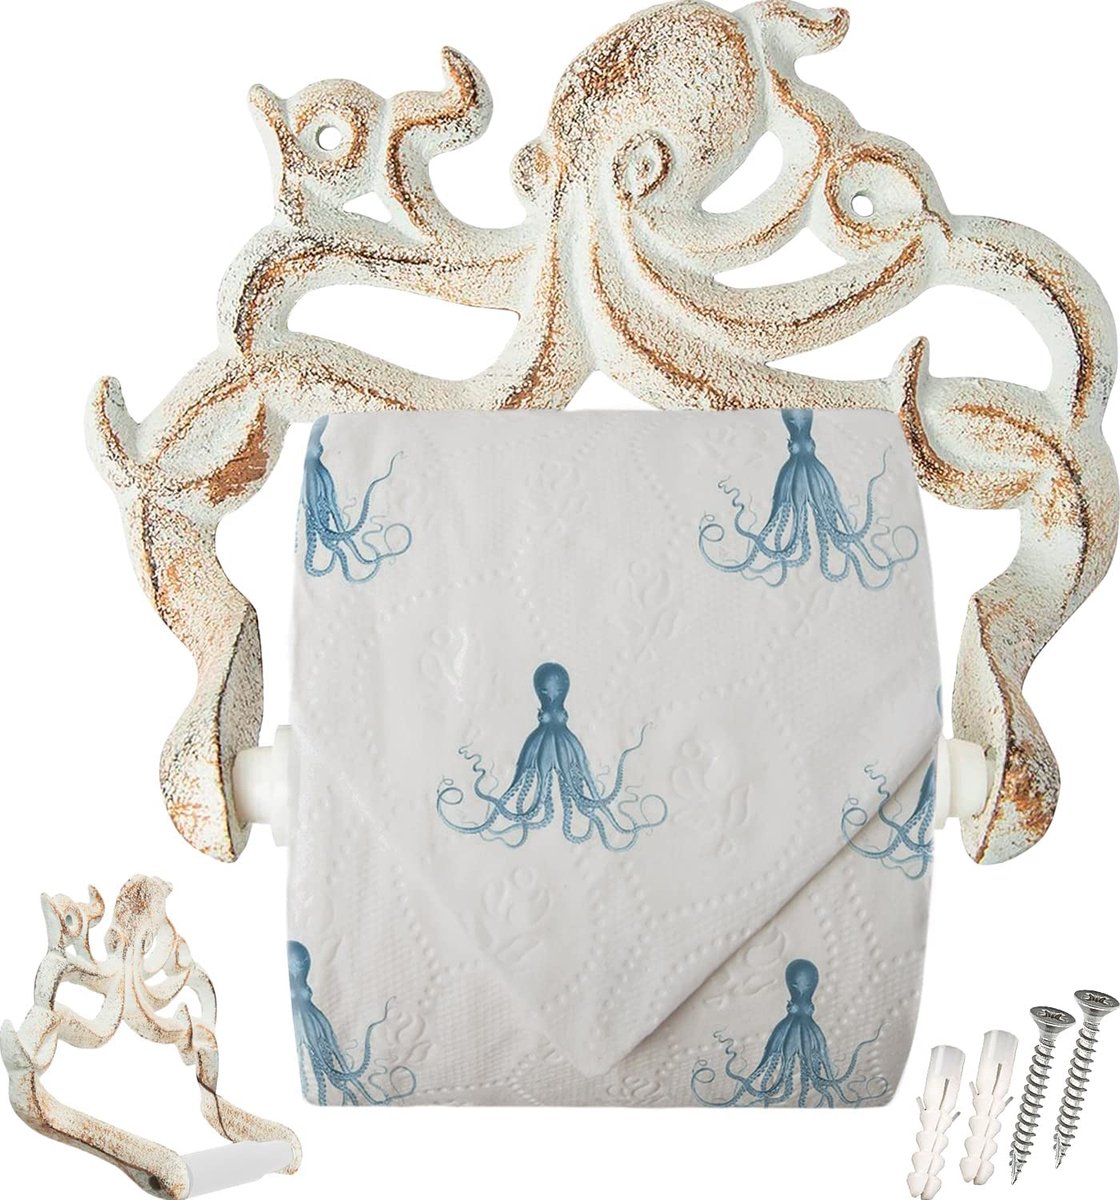 Decoratieve Gietijzeren Octopus Toiletrolhouder - Wandgemonteerde Octopus Décor voor Badkamer - Kraken, Nautische Badkamer Accessoires - Gemakkelijk te installeren met meegeleverde Schroeven en Ankers